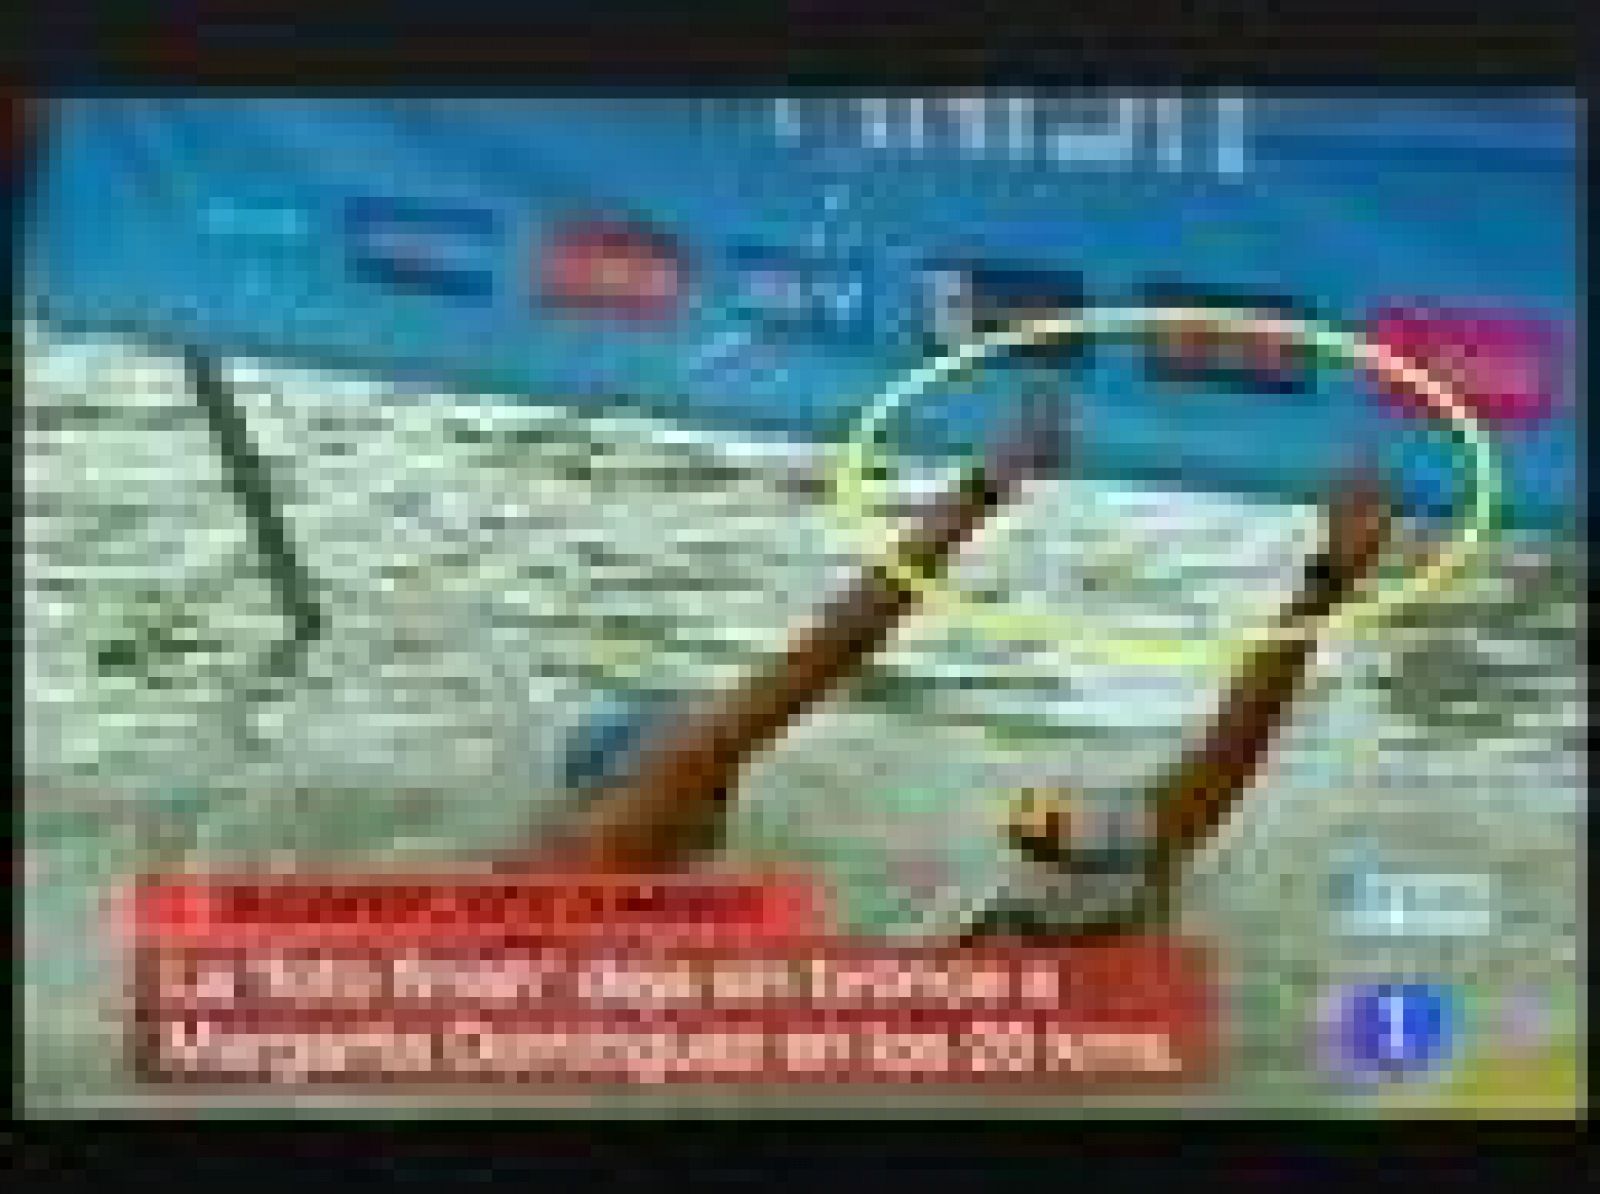 La nadadora española Margarita Domínguez se ha quedado con la miel en los labios en la prueba de 25 kilómetros de la competición de aguas abiertas de los Campeonatos de Europa de Natación, que se están disputando en Budapest hasta el 15 de agosto, al perder la medalla de bronce en la 'foto-finish'.